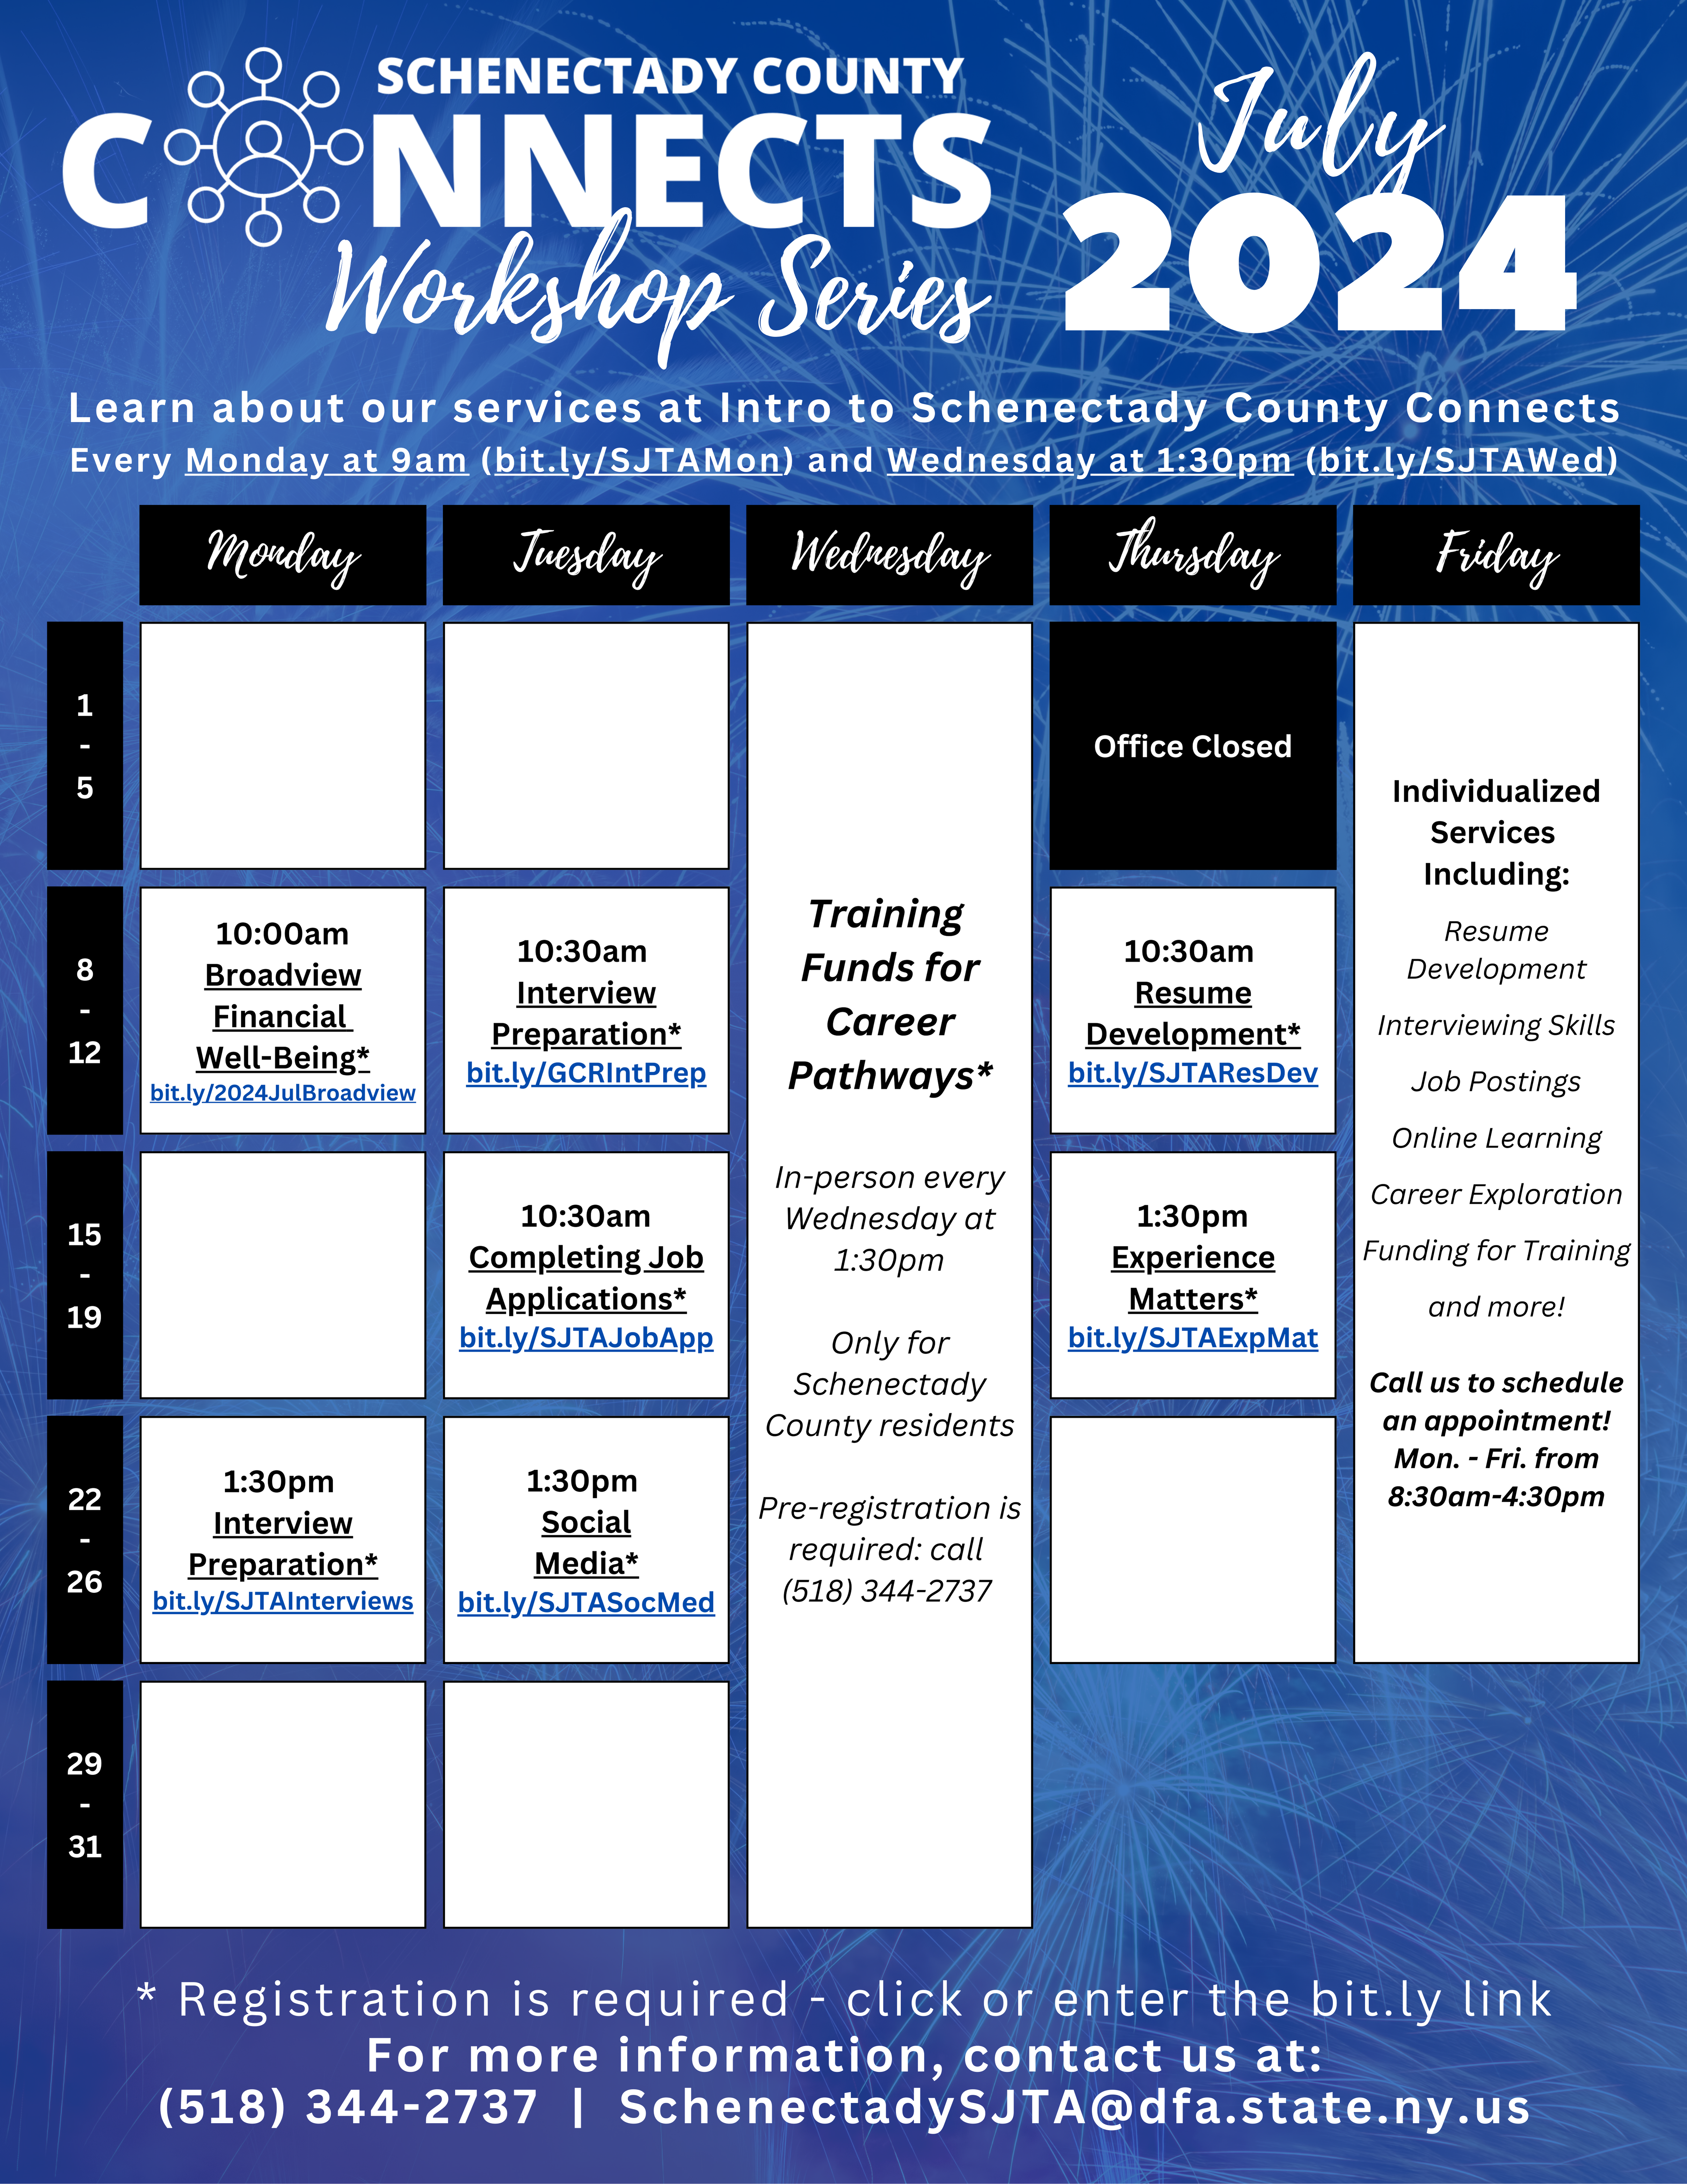 July workshops